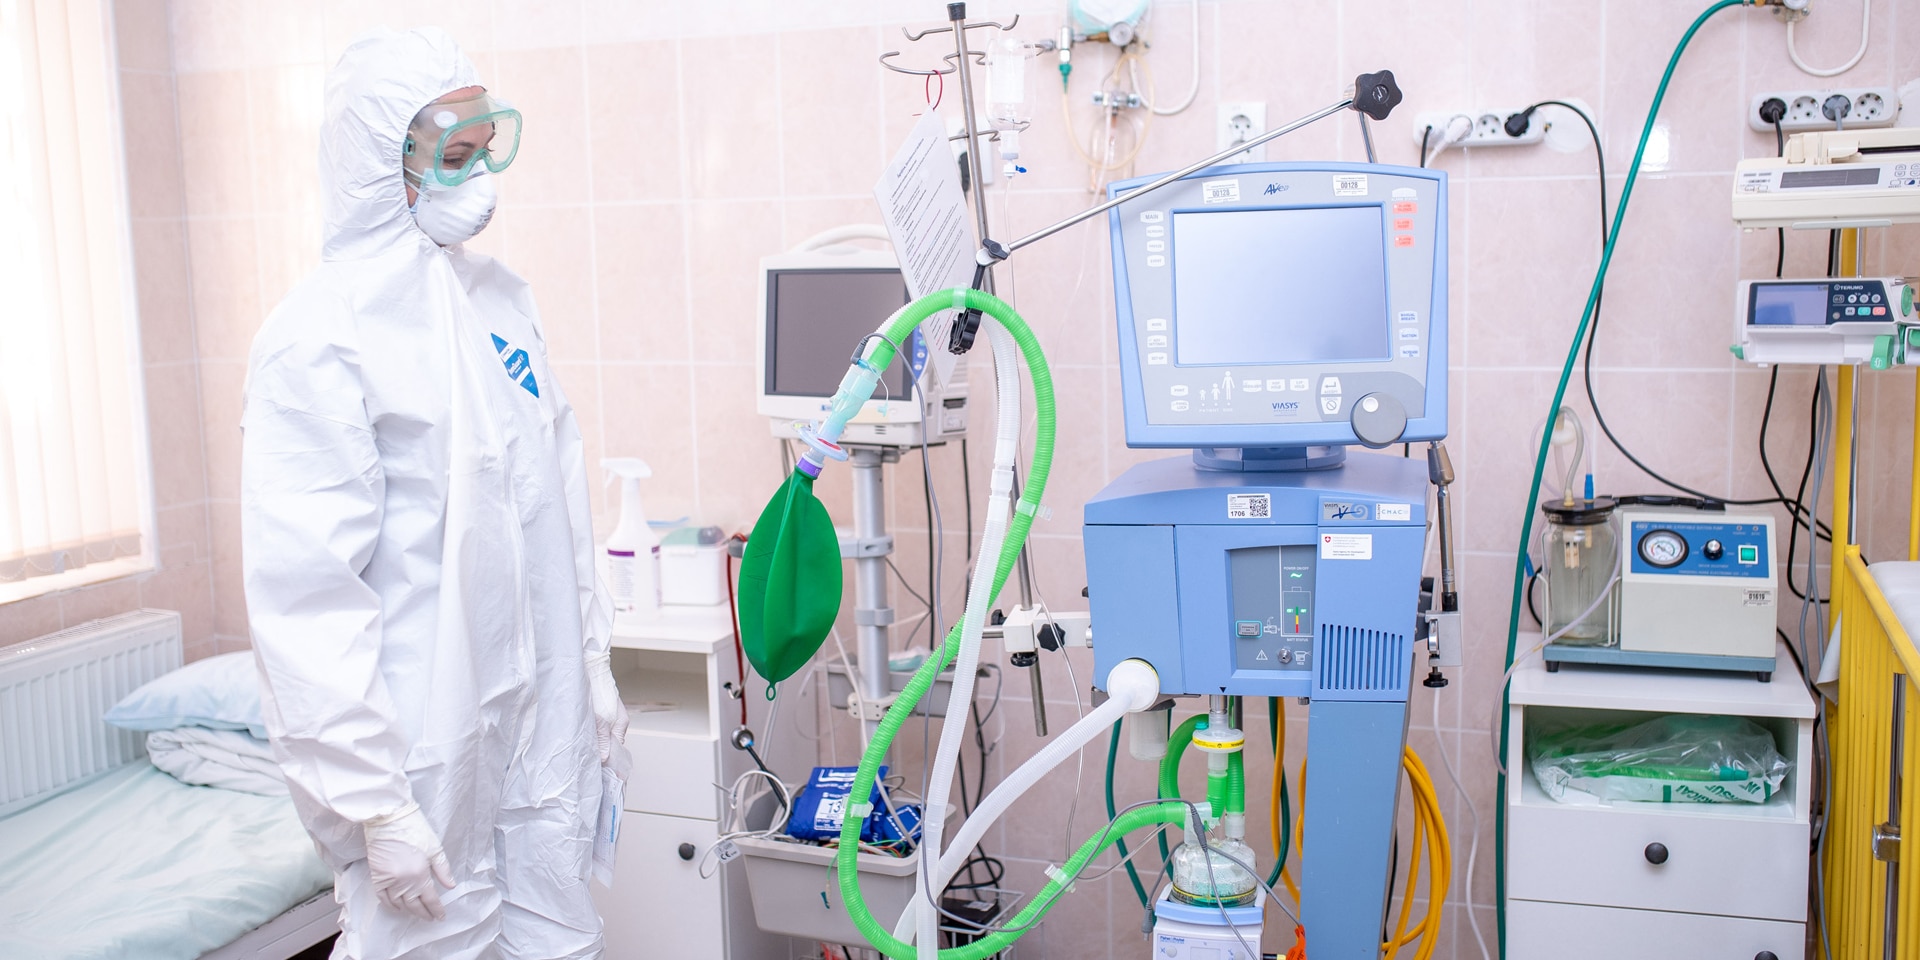 Eine Frau, die einen Schutzanzug, eine Brille und eine Maske trägt, steht in einem Krankenzimmer neben medizinischen Apparaten. 